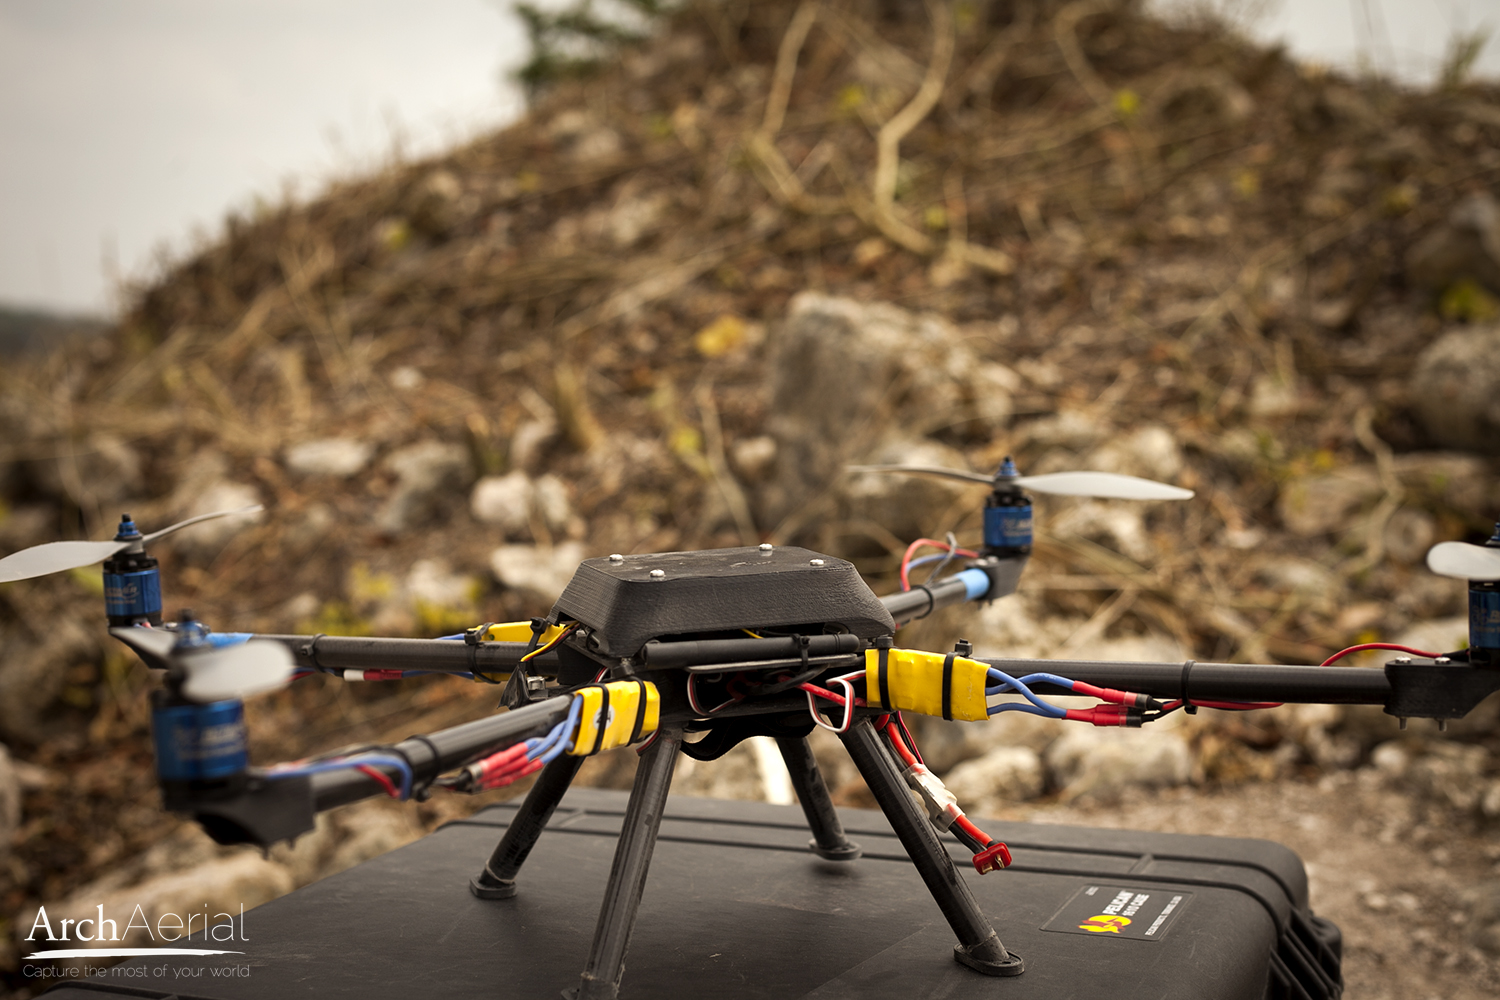 Le drone d’Arch Aerial, dont on voit ici le prototype testé durant l’été 2013, peut voler à environ 50 km/h. © Arch Aerial